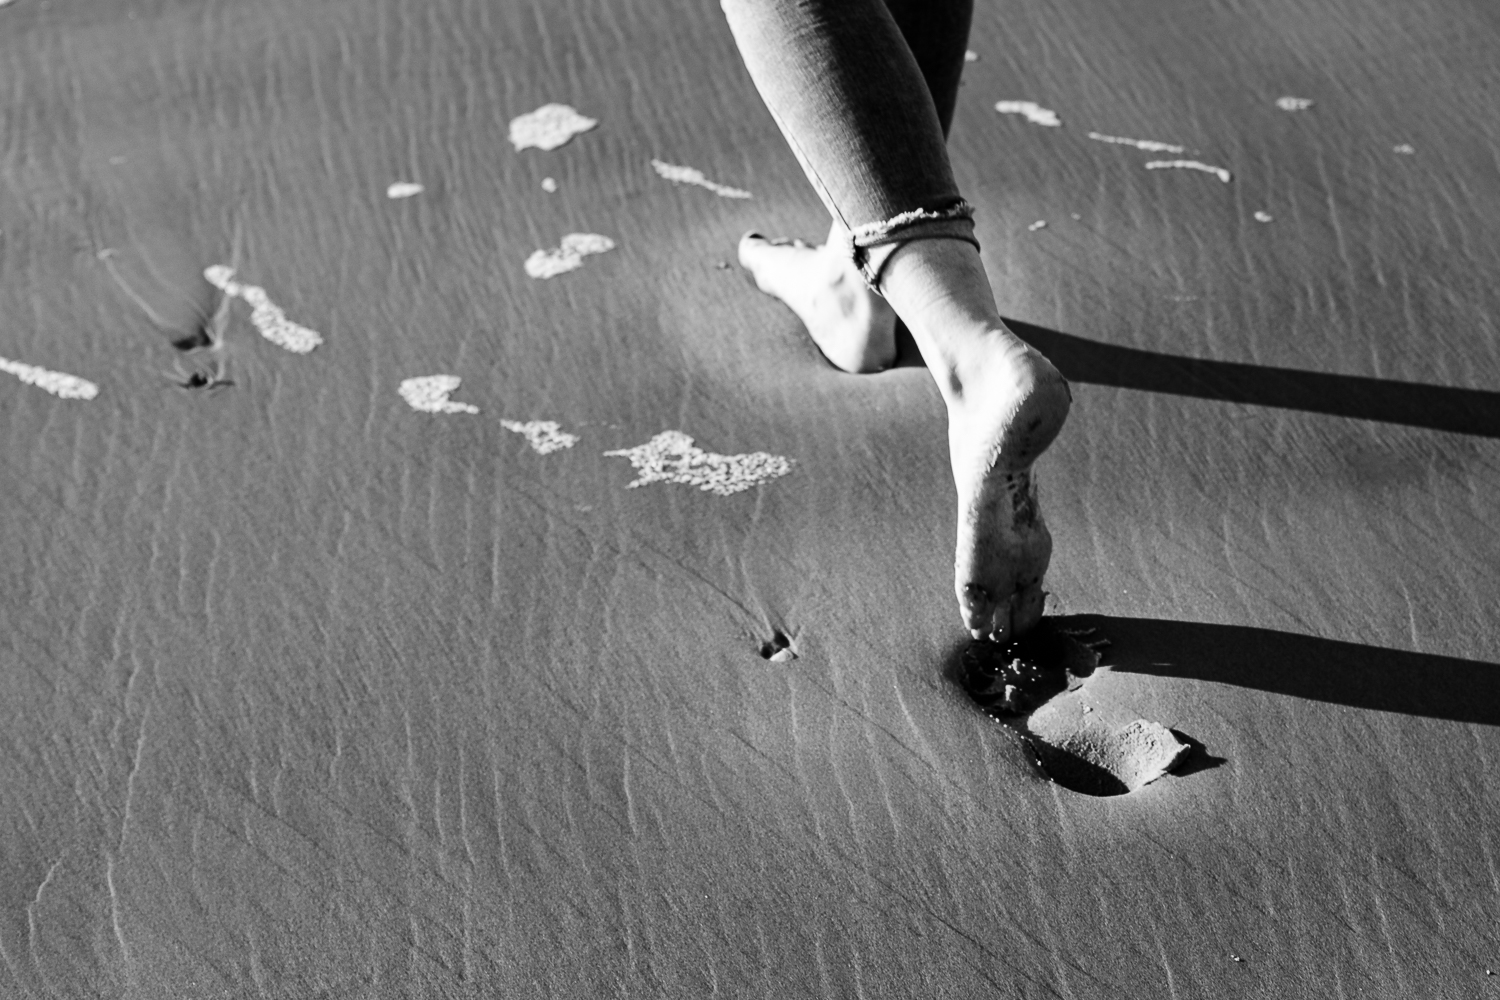 Yvon laat voetafdrukken na in het zand